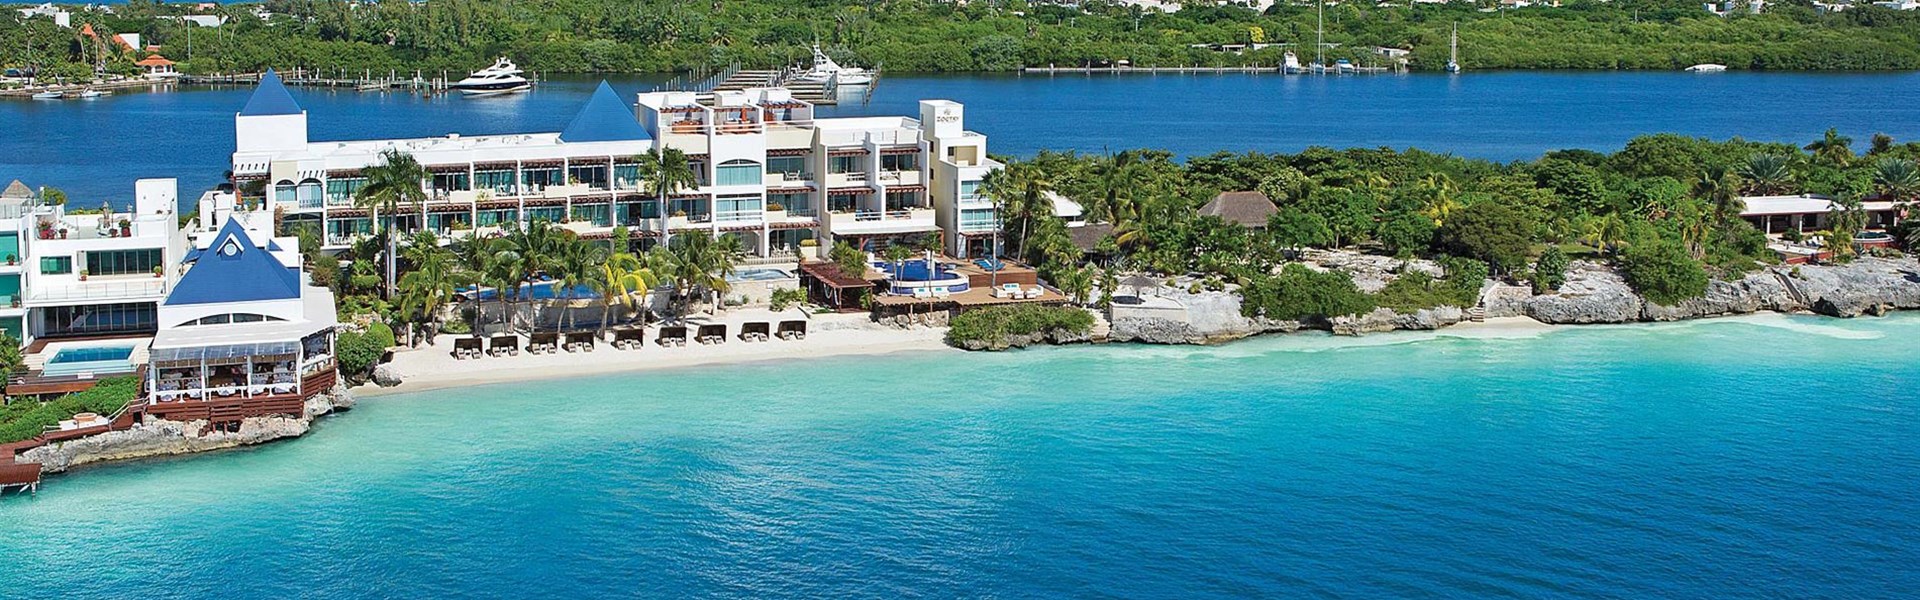 Zoetry Villa Rolandi Isla Mujeres Cancun 5* All Inclusive - 